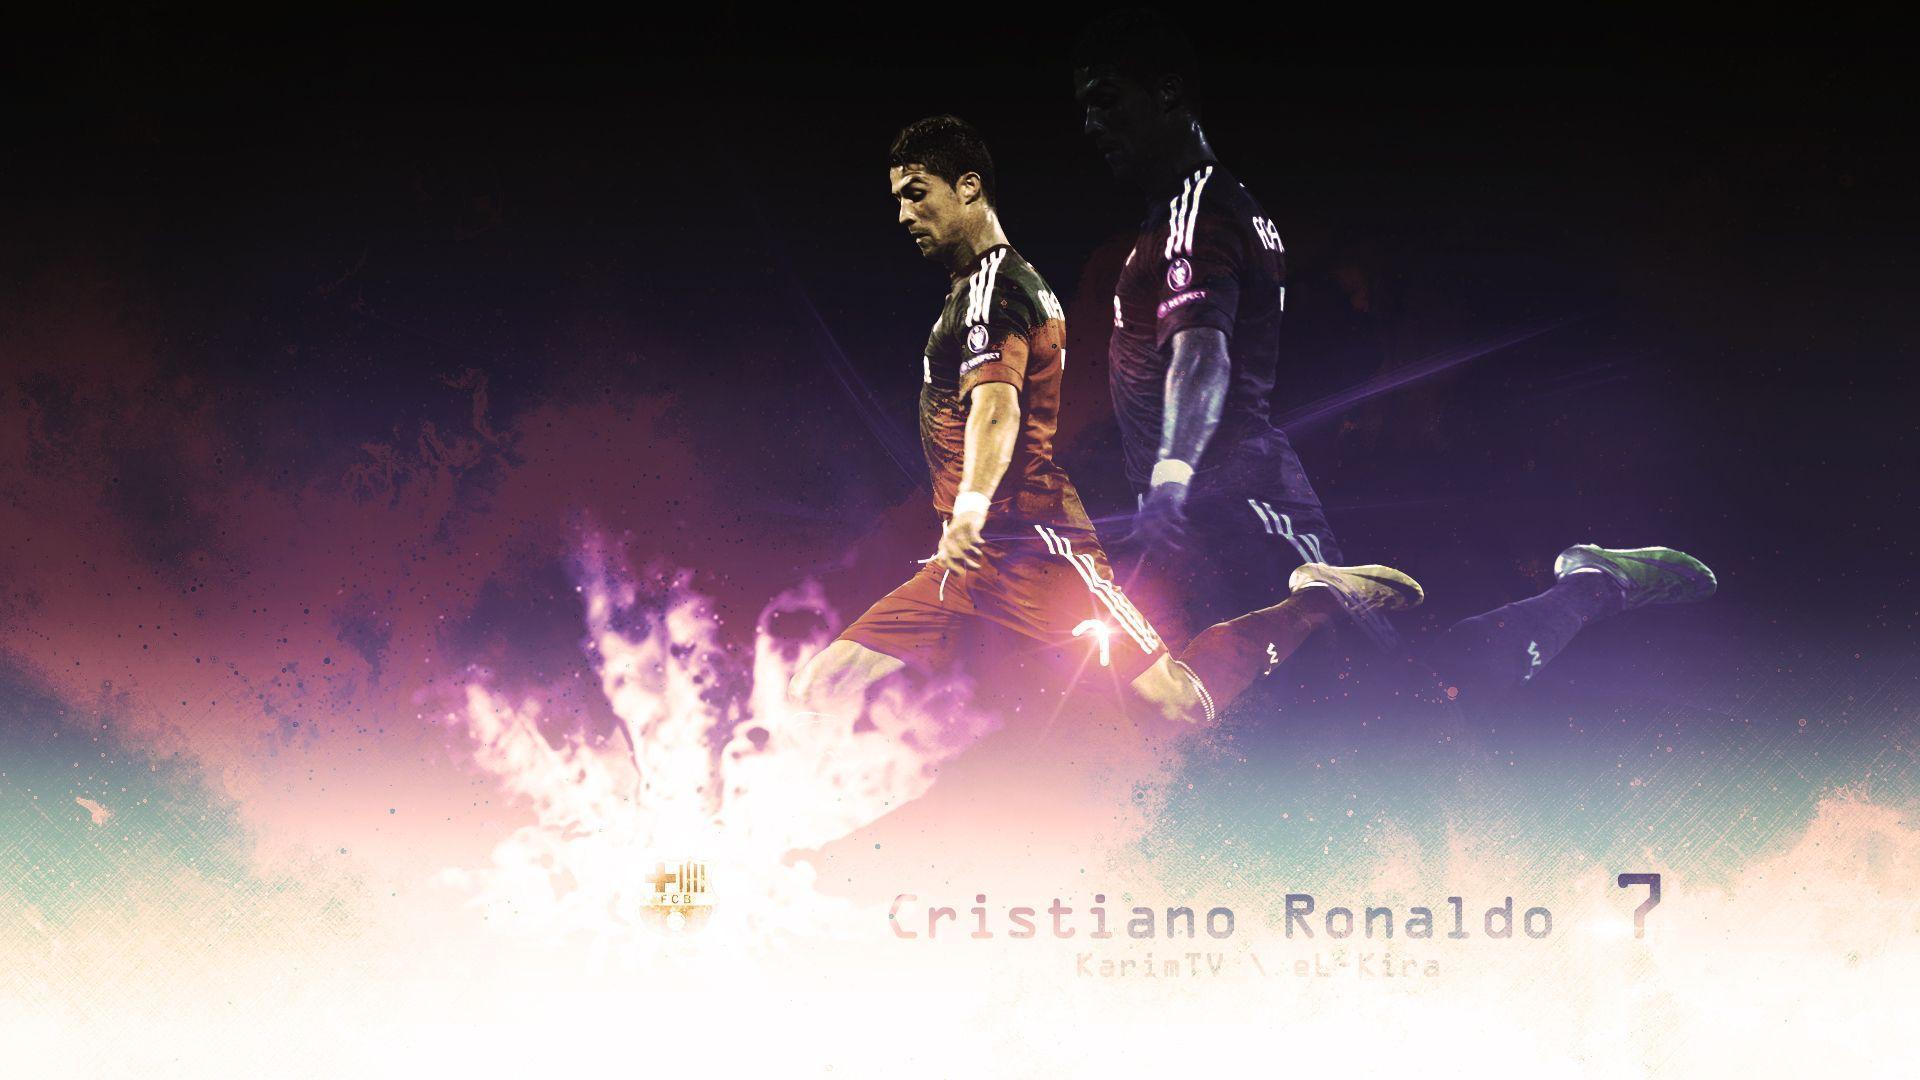 Cristiano Ronaldo 7 Madrid 2012 By EL Kira